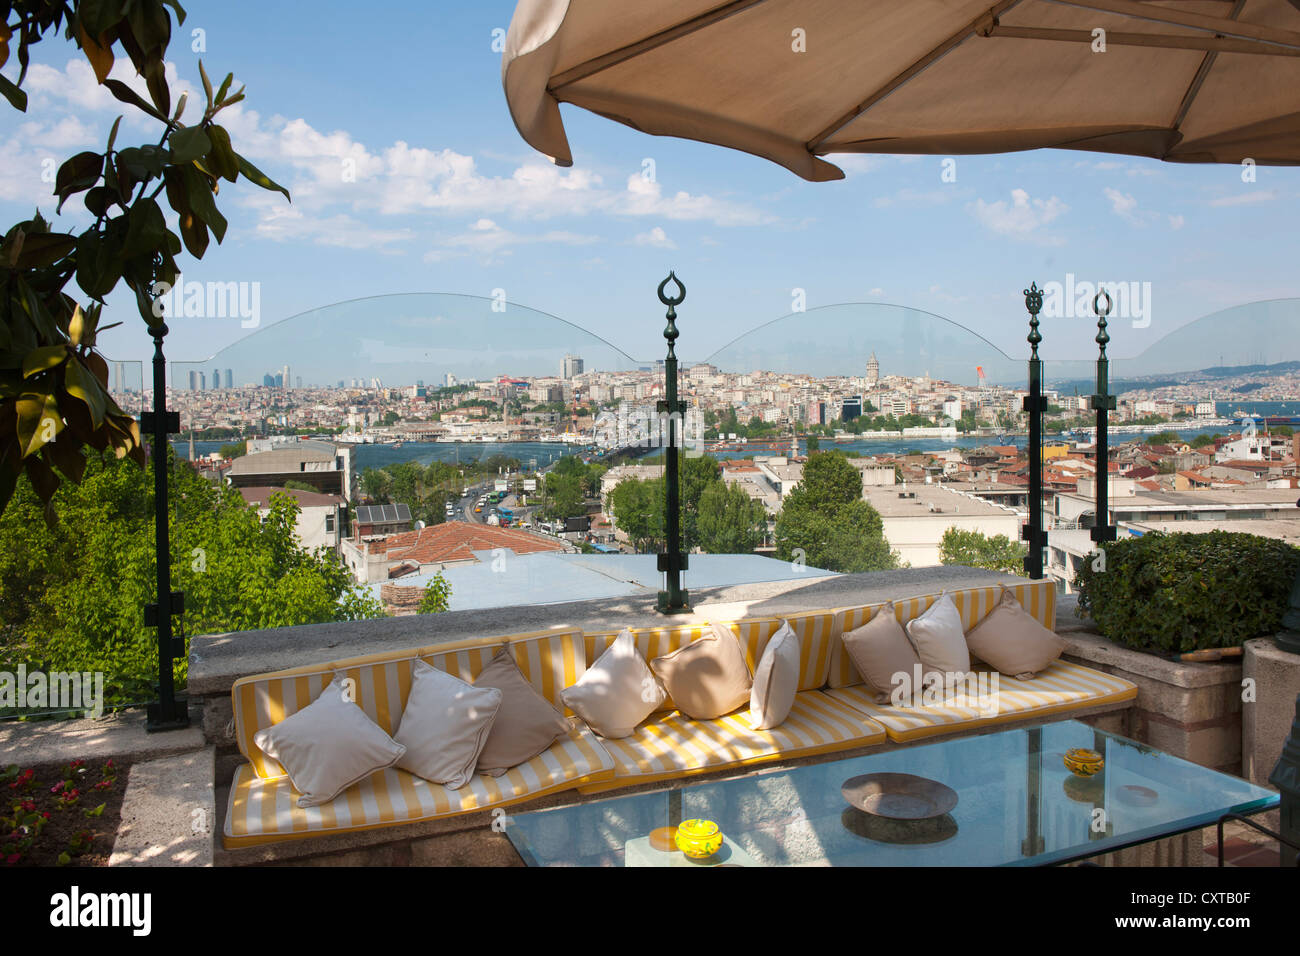 Türkei, Istanbul, Garten und Terrasse des Restaurant Zeyrekhane an der Zeyrek-Moschee Stock Photo